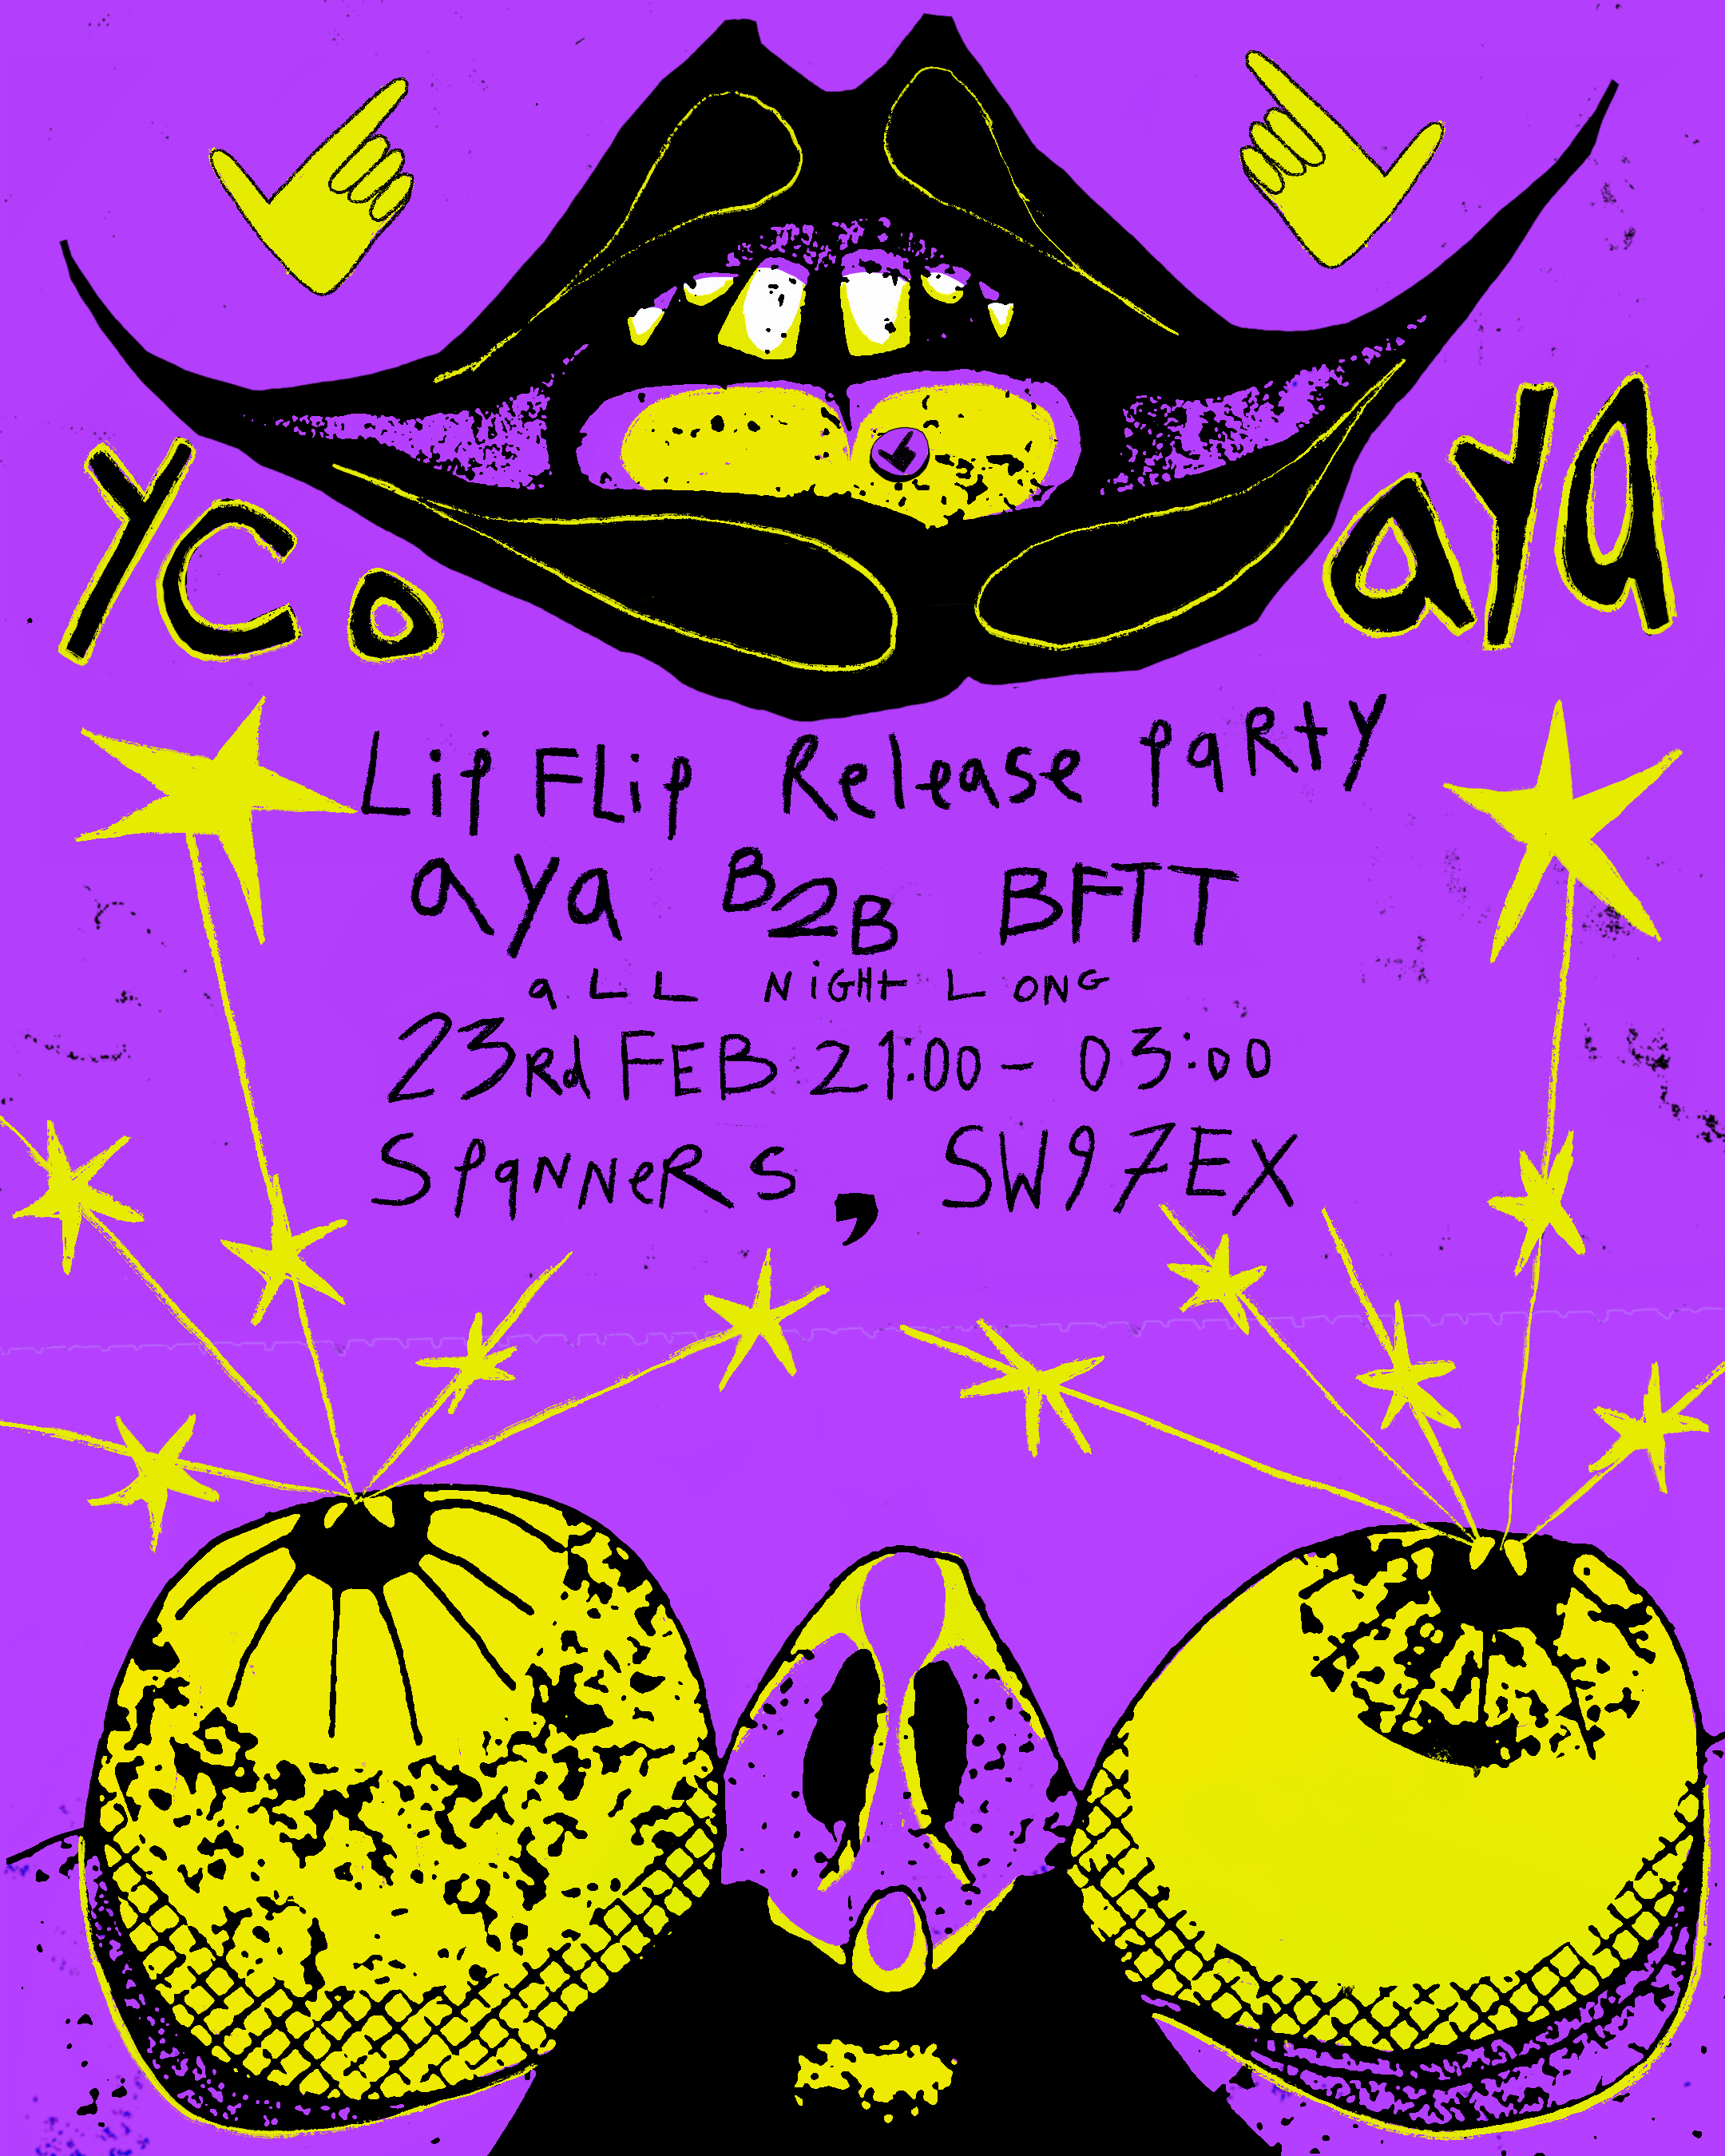 YCO: Lip Flip release party - Página frontal